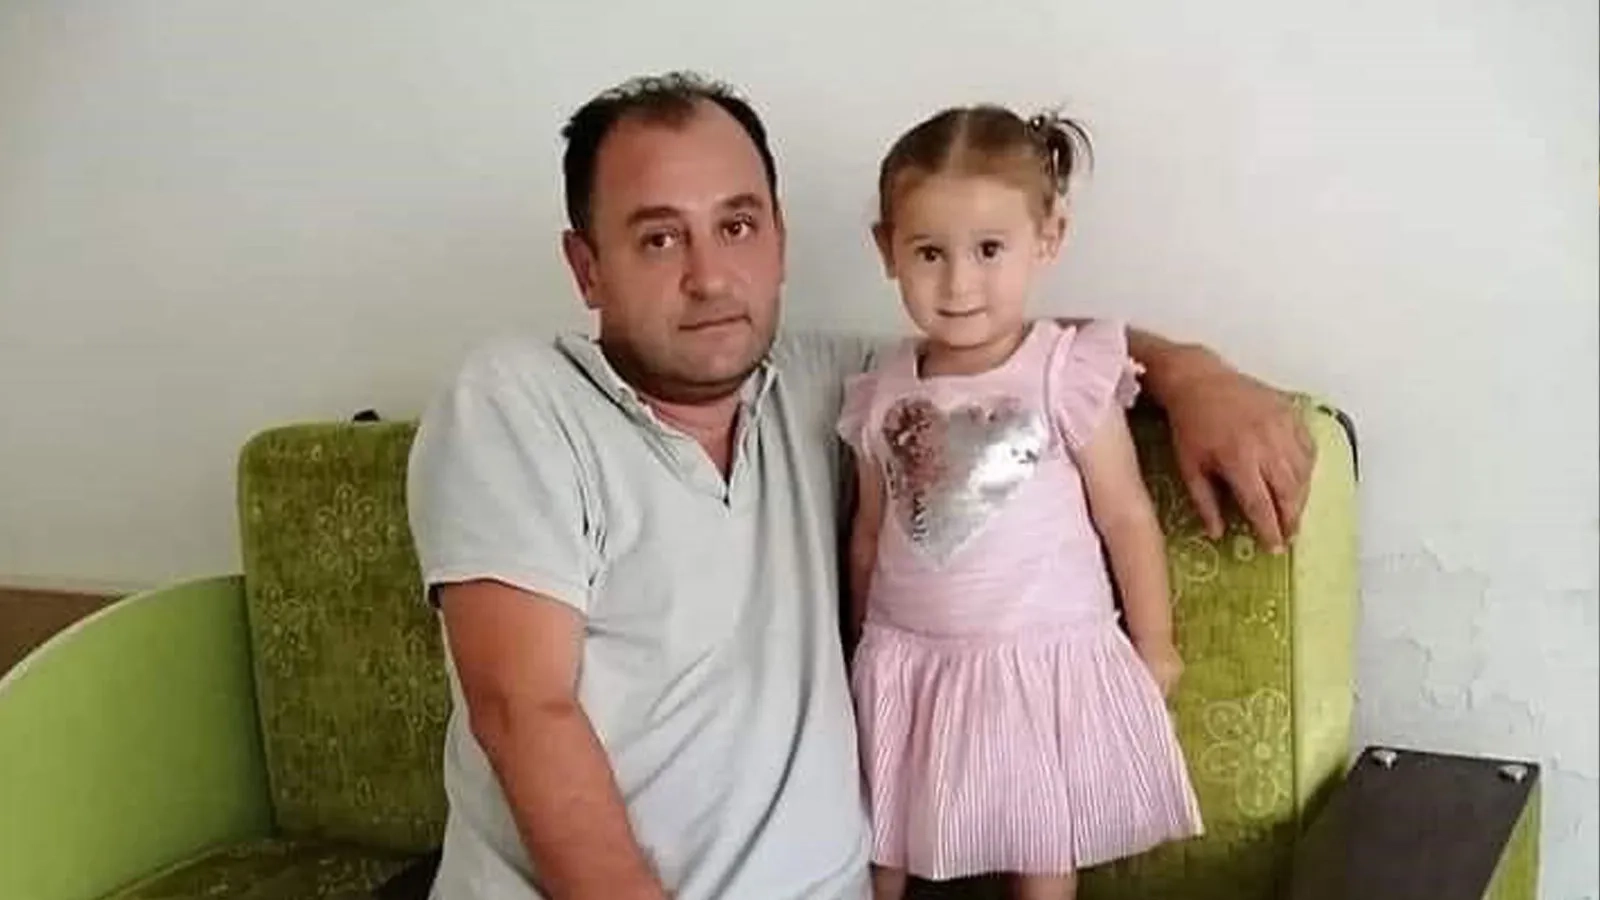 Türkiyədə DƏHŞƏT: Ata və azyaşlı qızı faciəvi şəkildə vəfat etdi